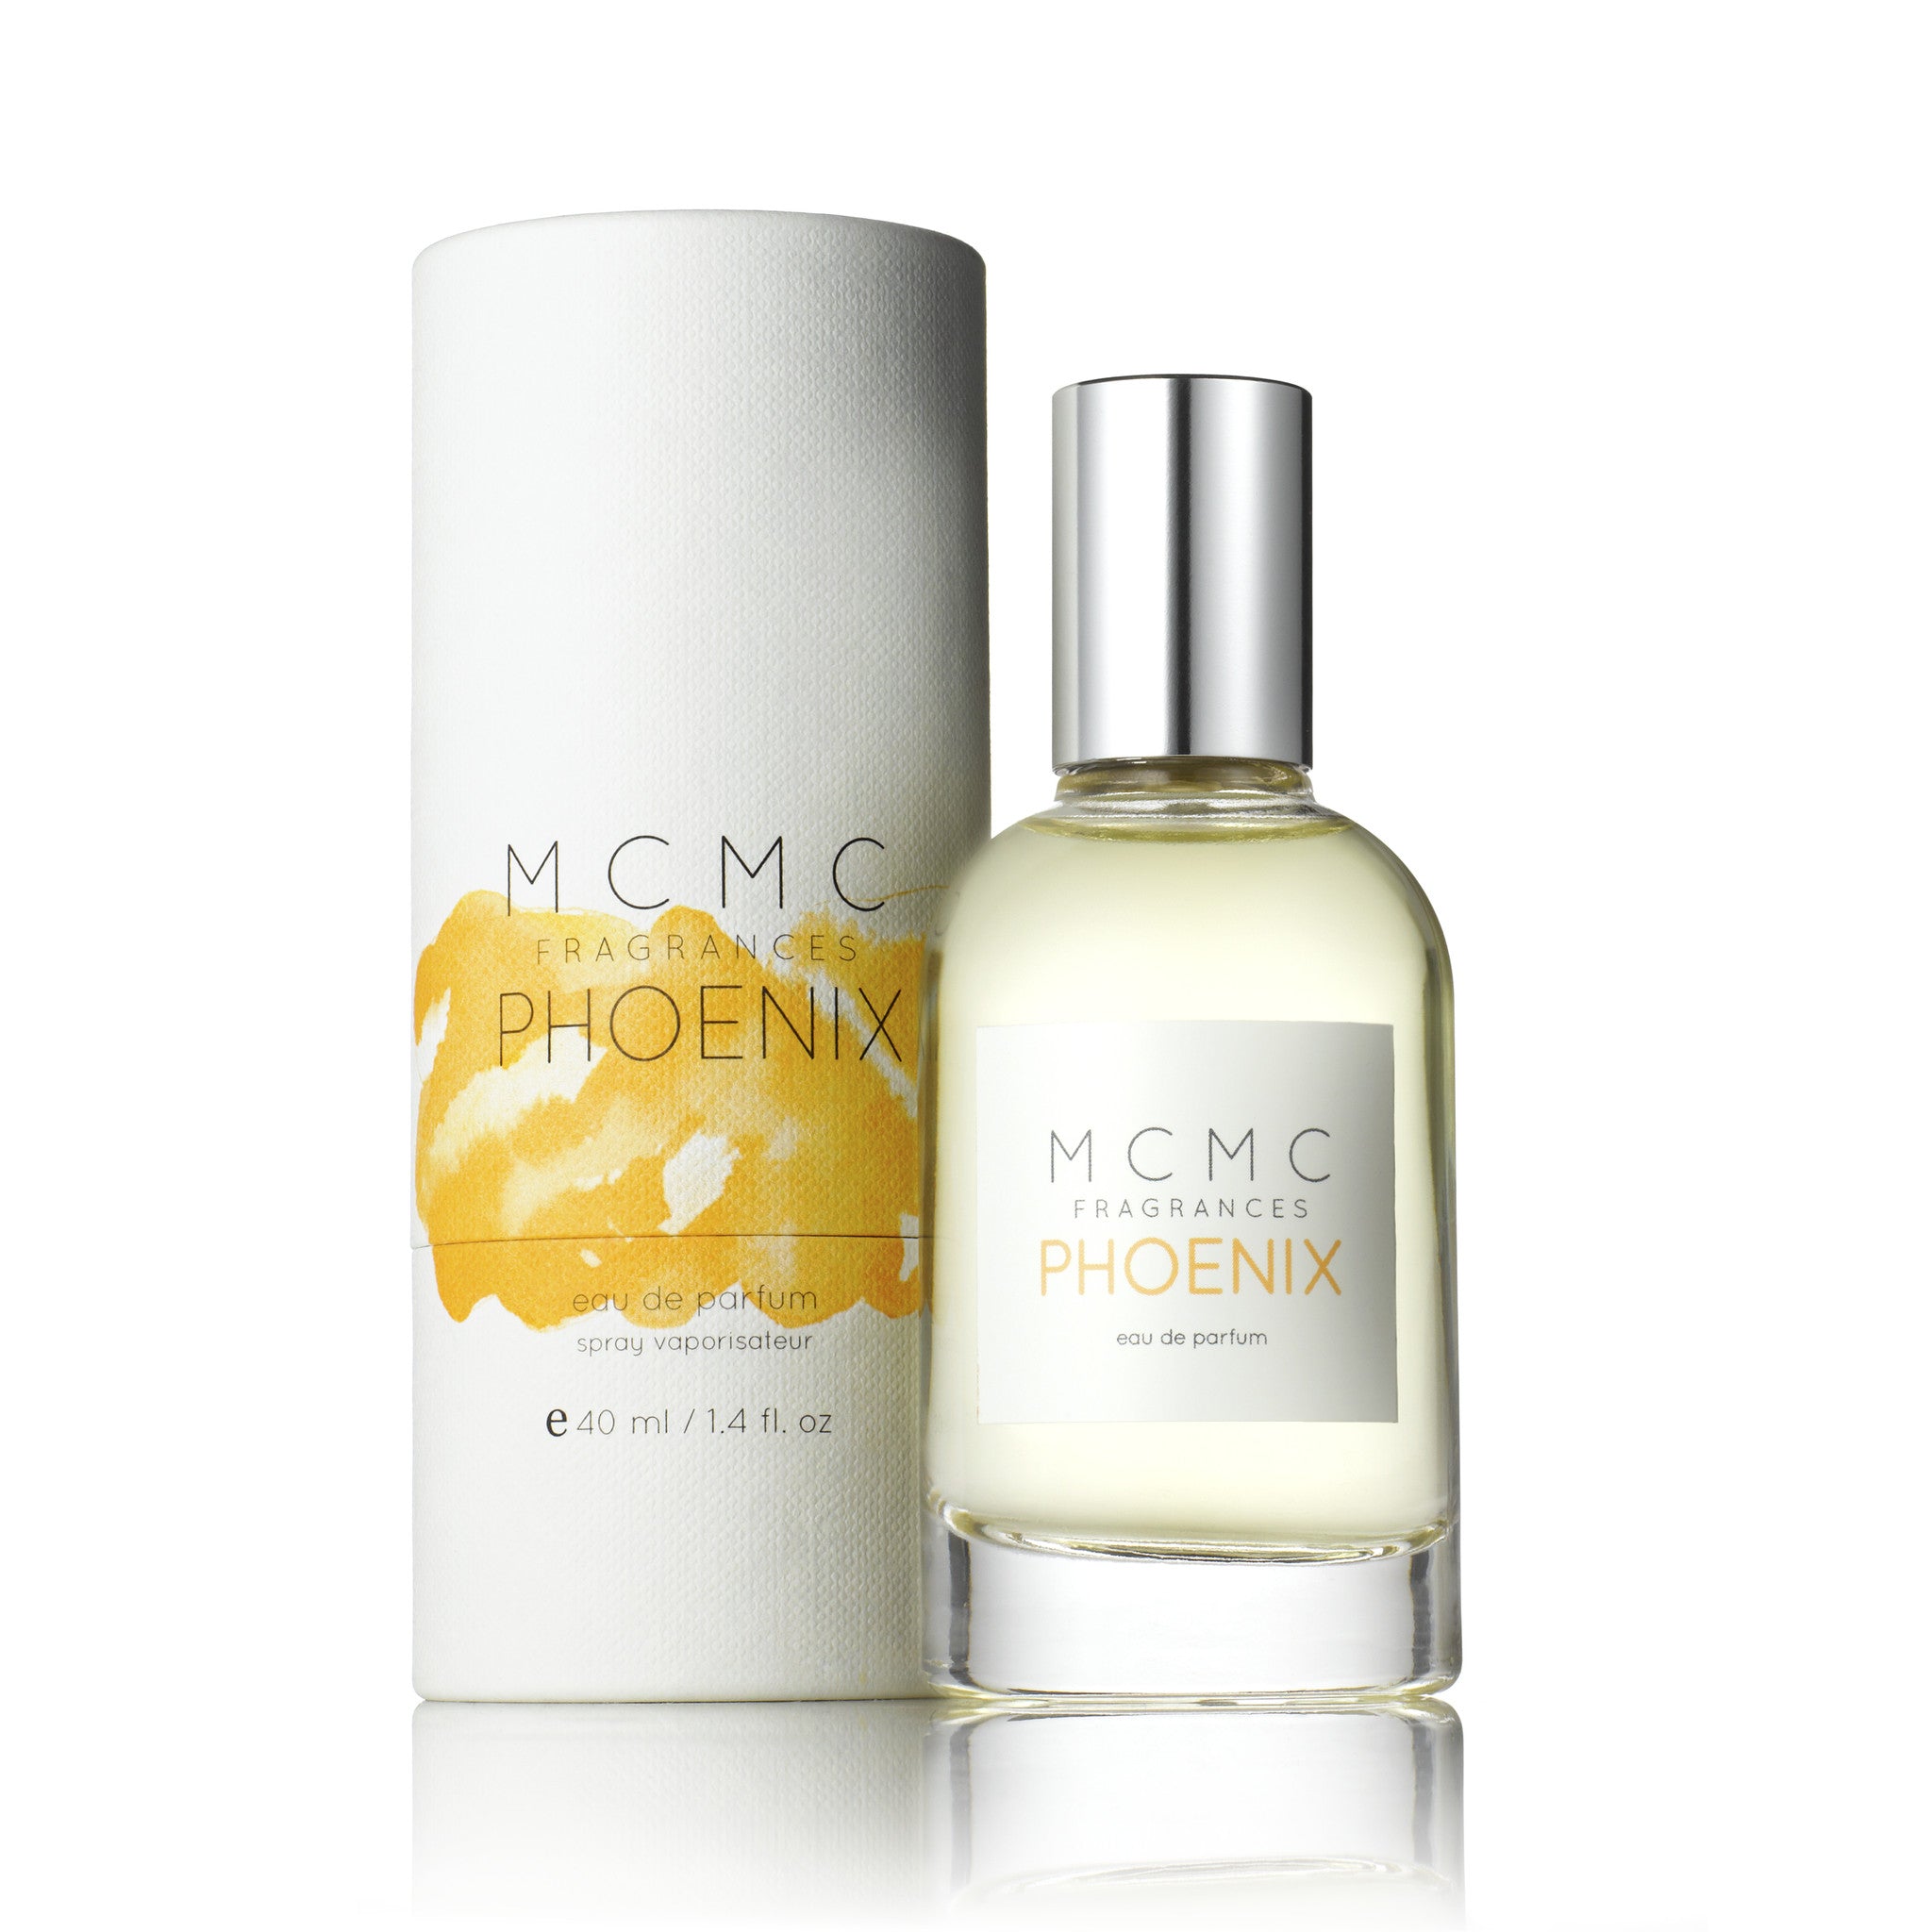 PHOENIX 50ml eau de parfum MCMC Fragrances